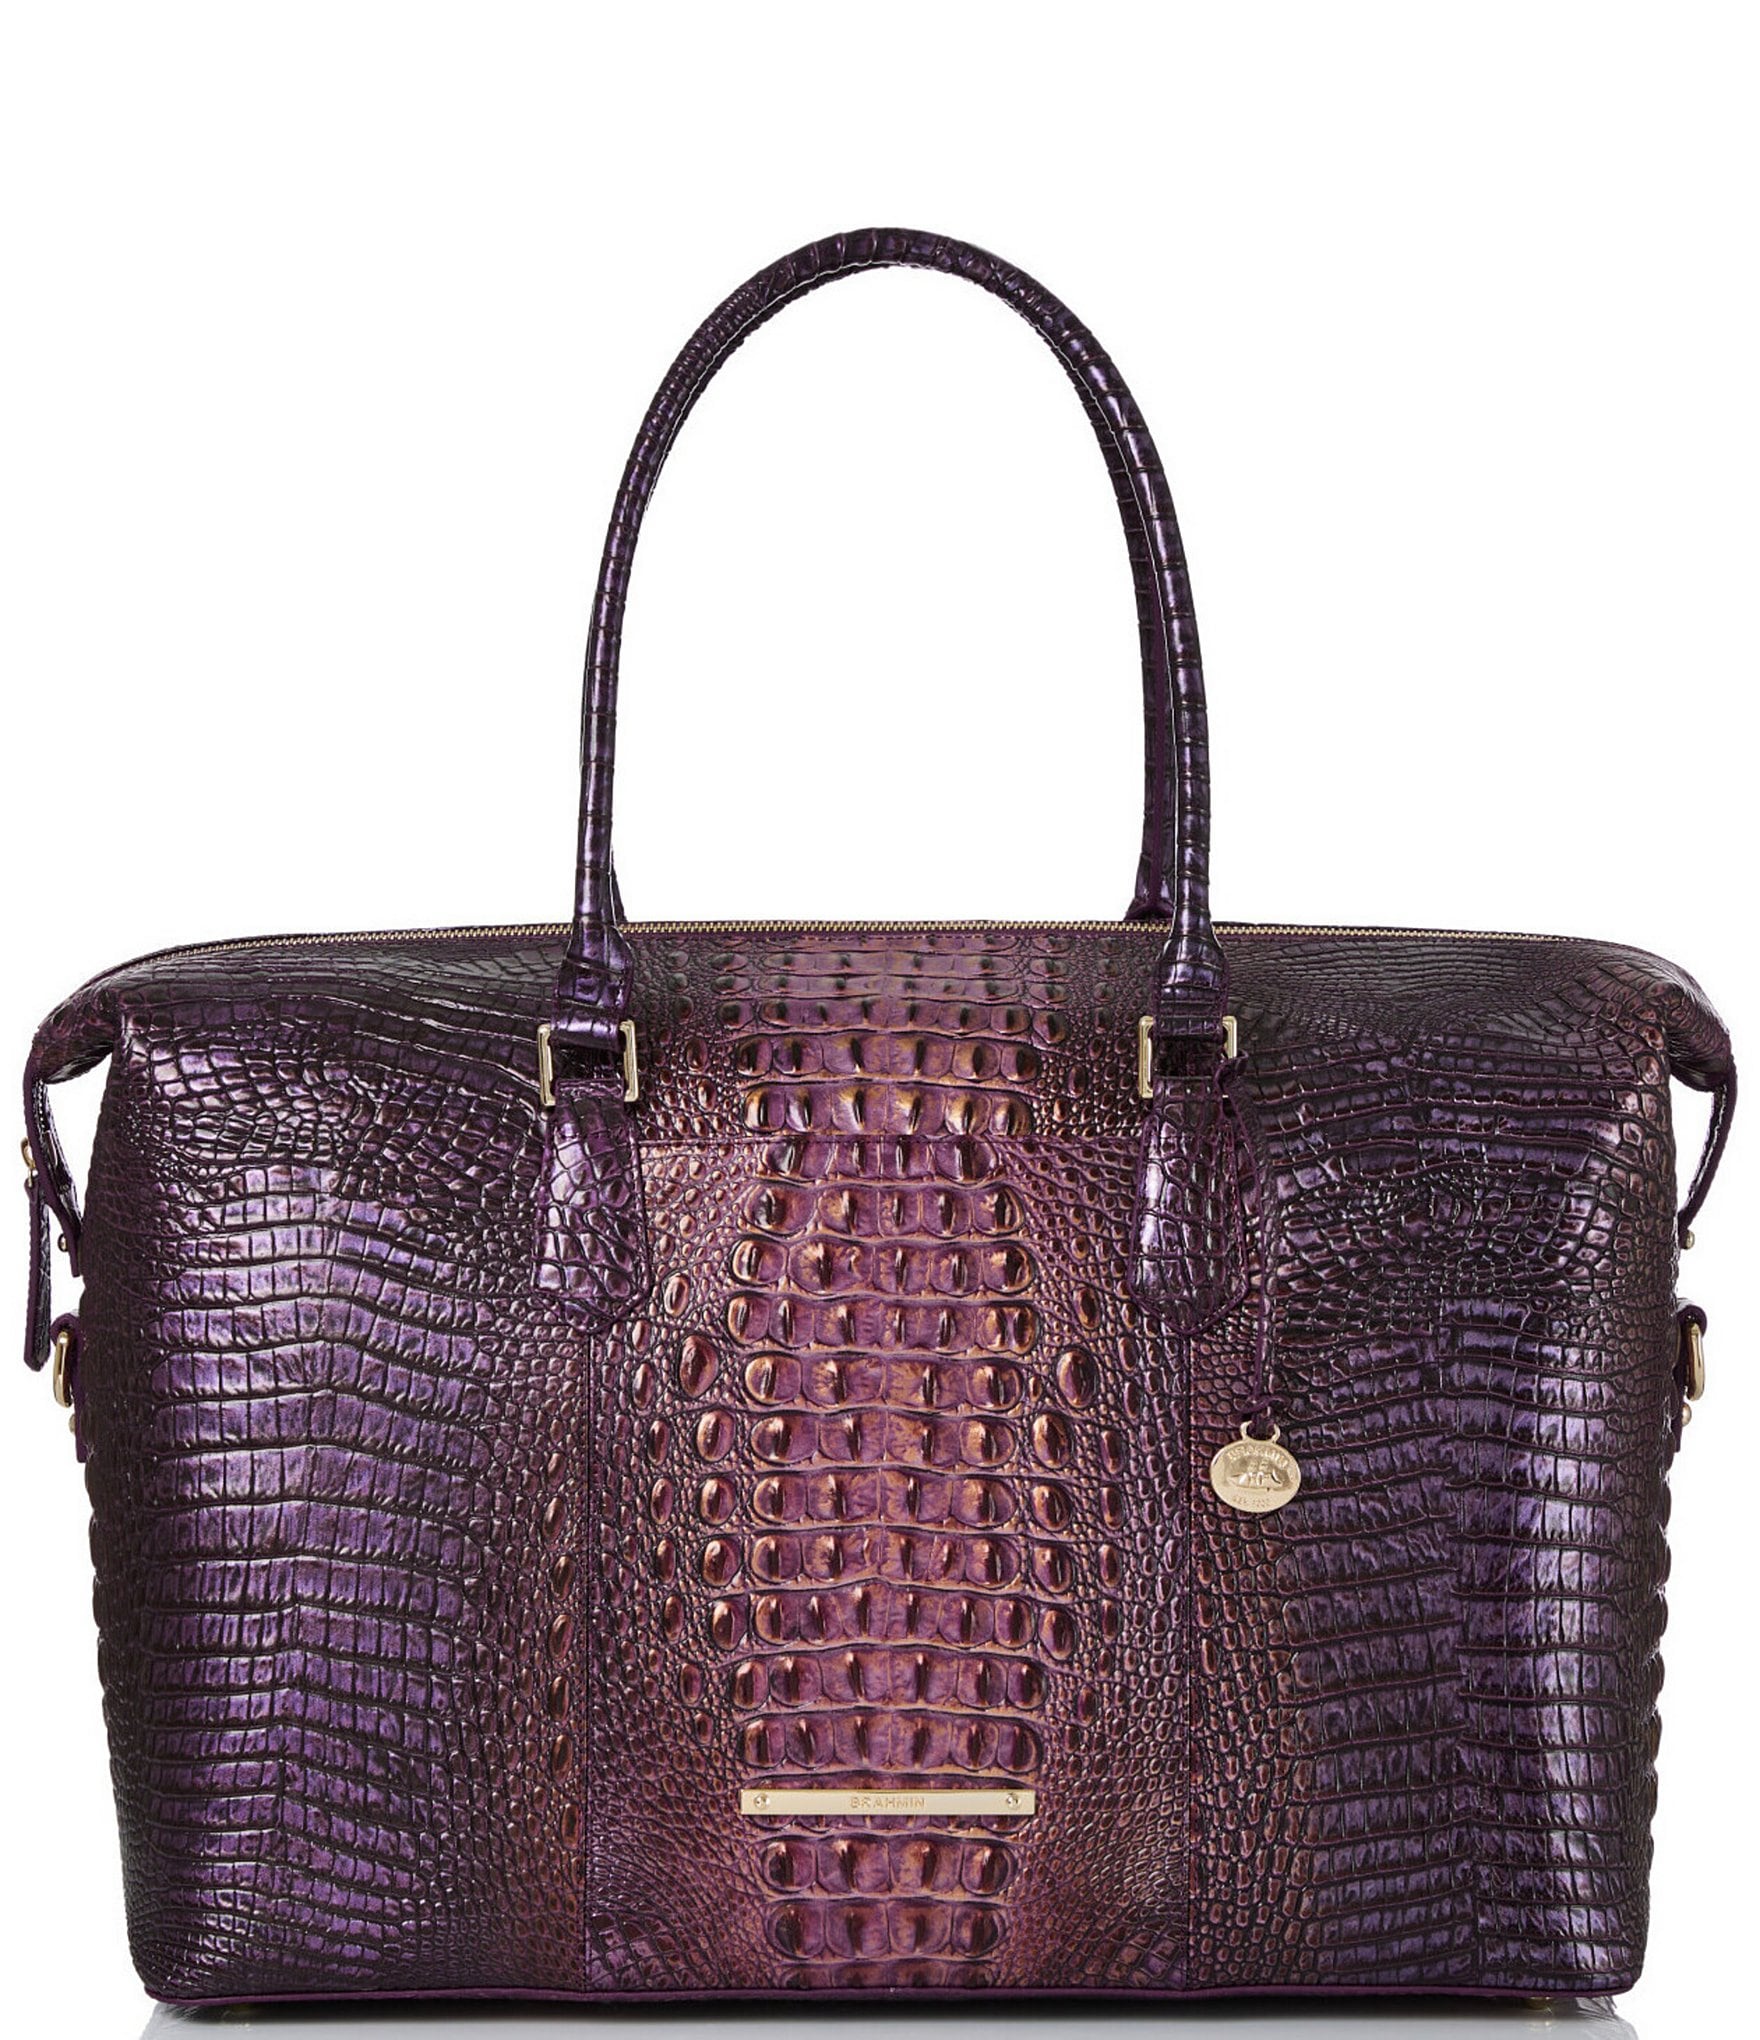 Leather Baguette Bag Black – Fig Cashmere Ltd.